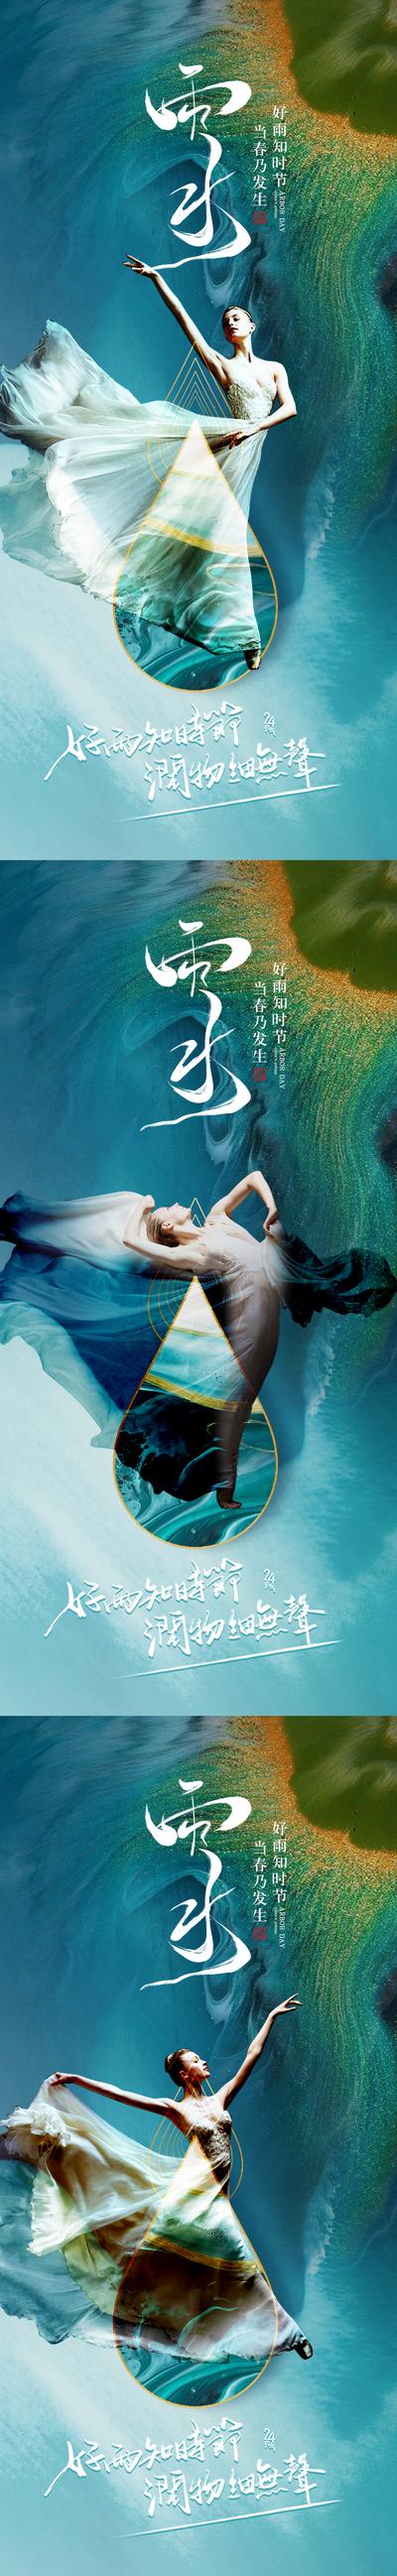 南门网 海报 医美 整形 二十四节气 雨水   舞蹈  水滴  中式  人物  系列